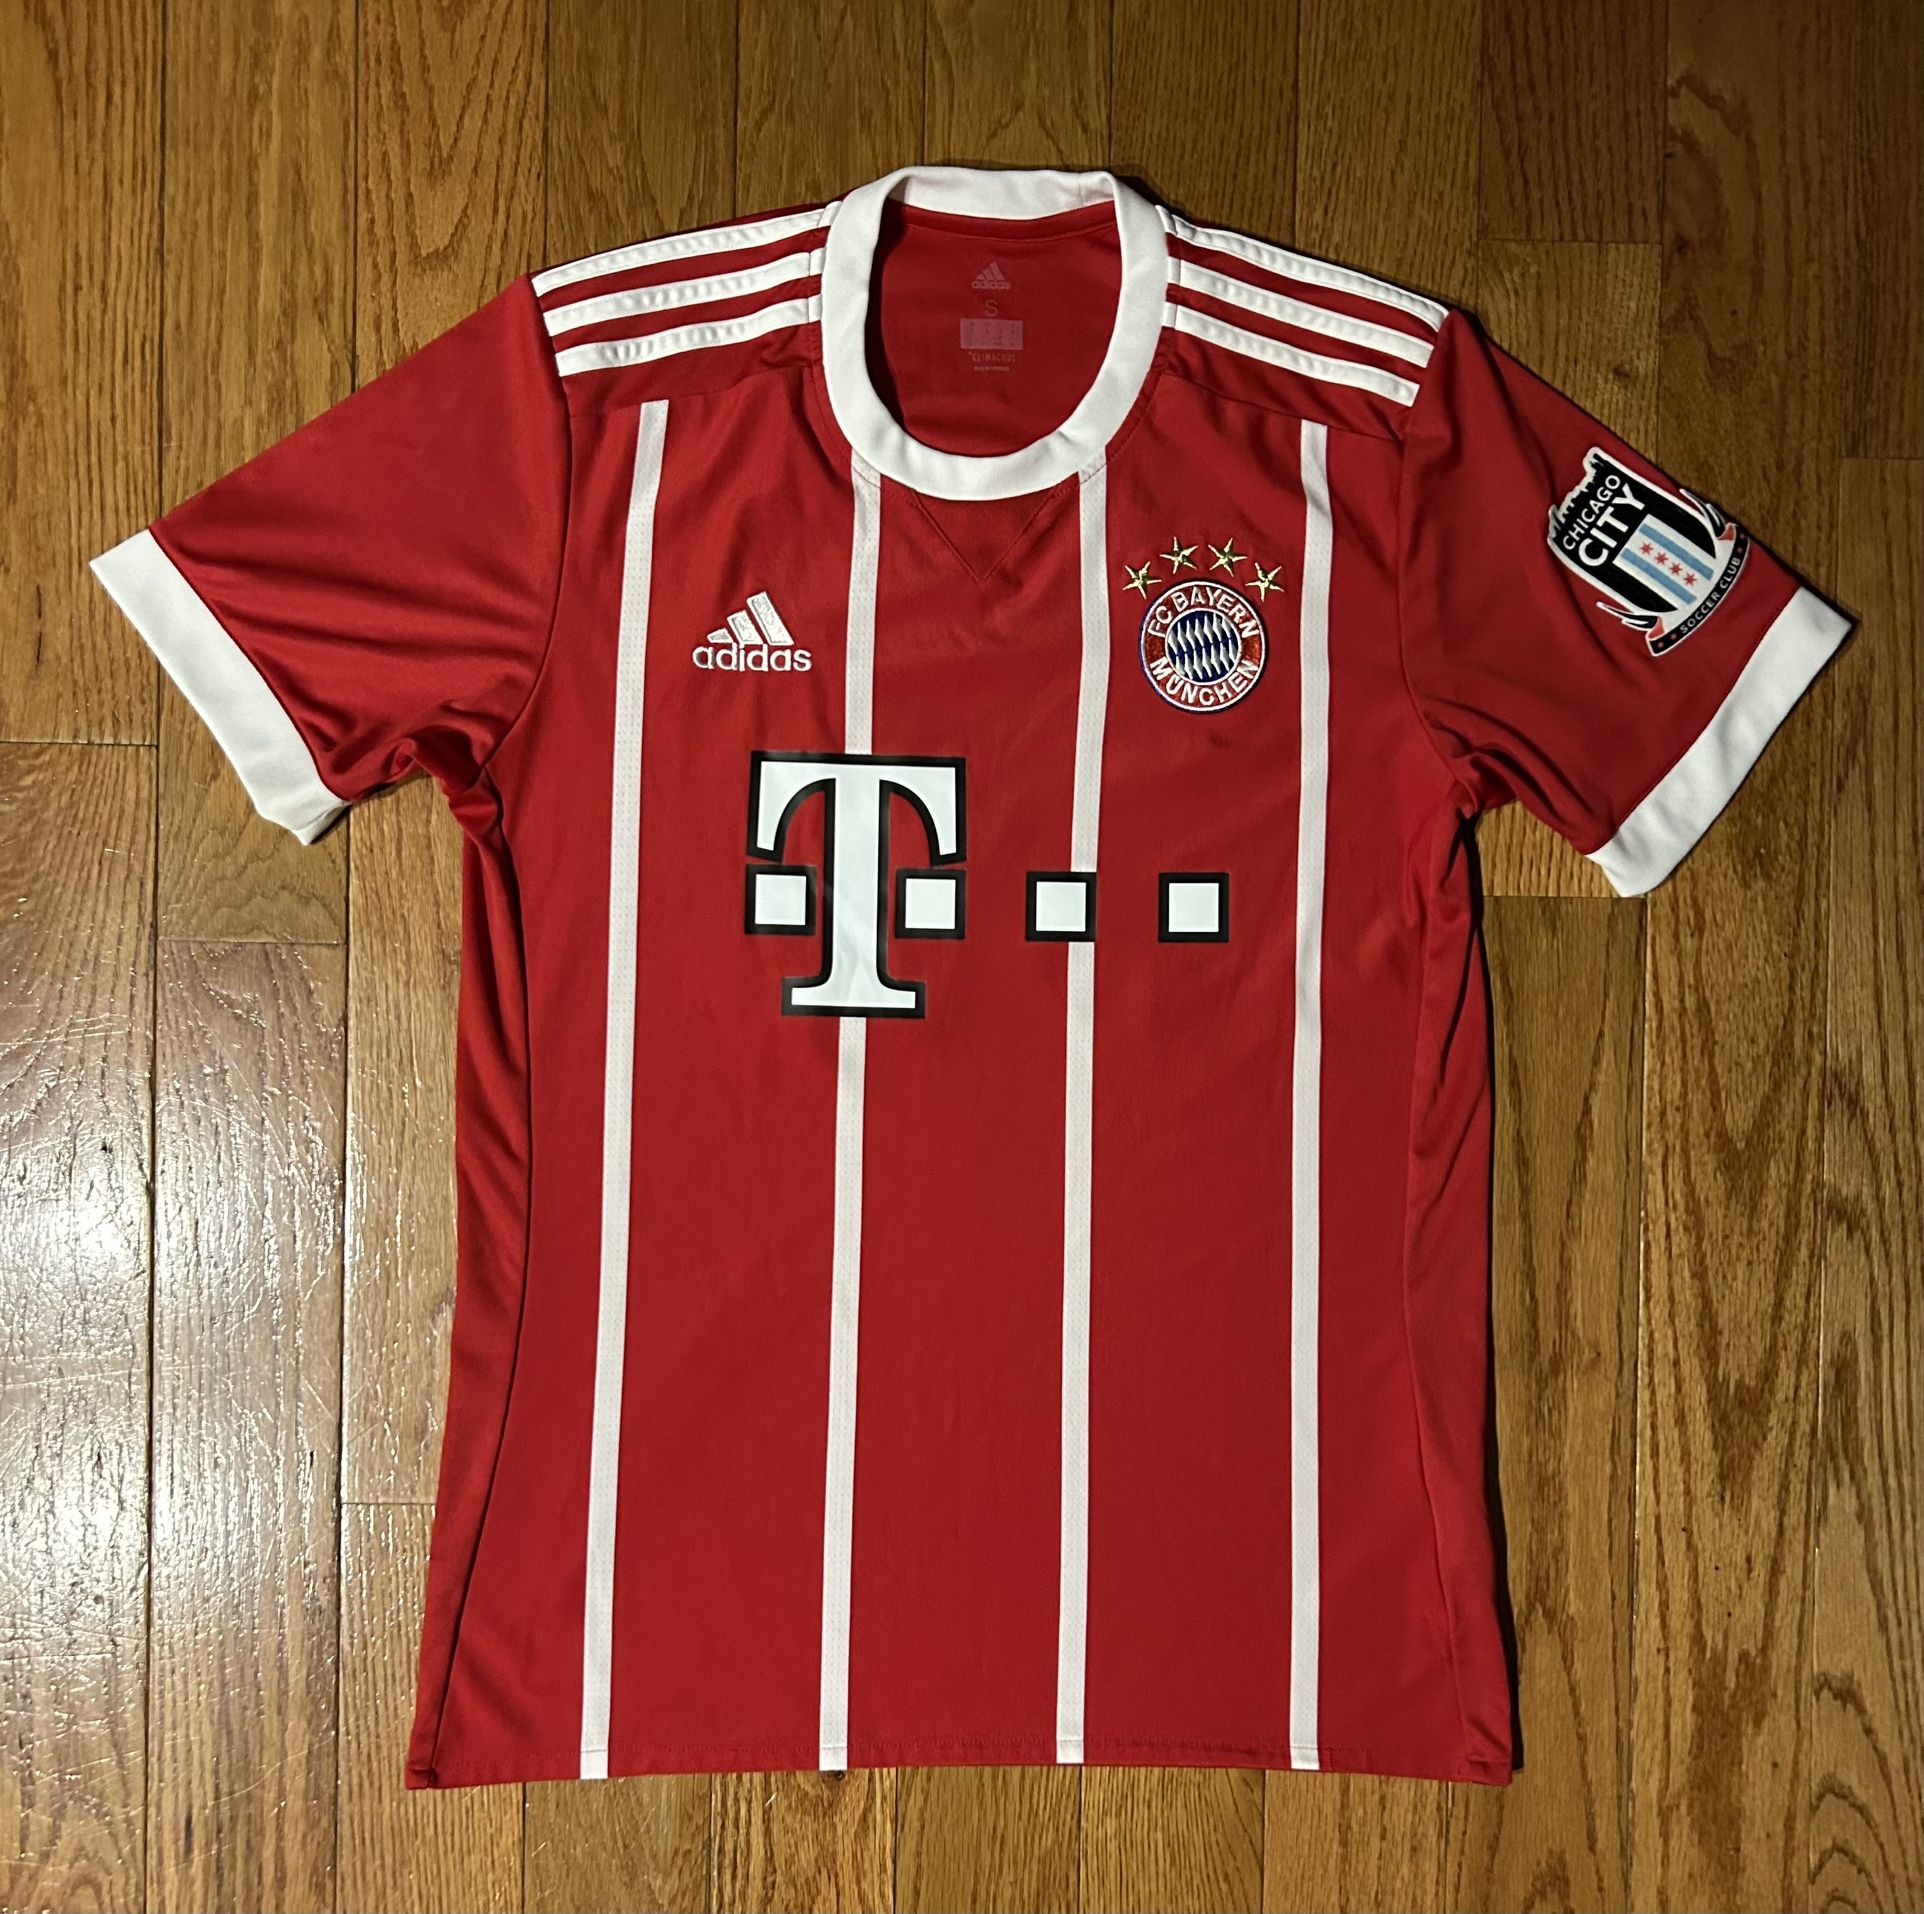 Bayern Munich 2017 #36 Chicago City Patch Adidas Jersey Size Small